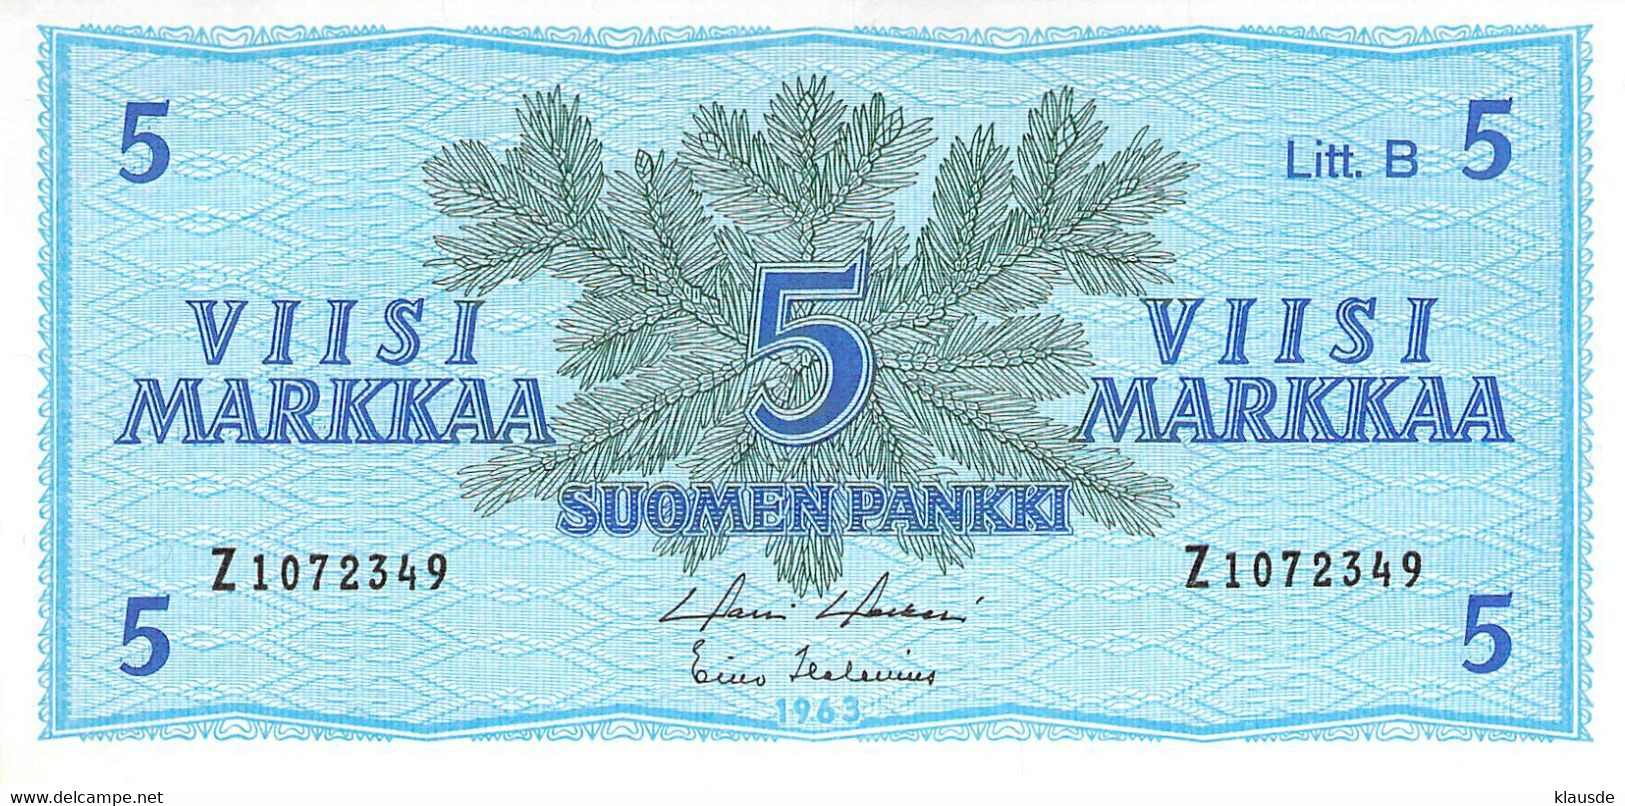 Finnland 5 Markkaa 1963  UNC - Finland